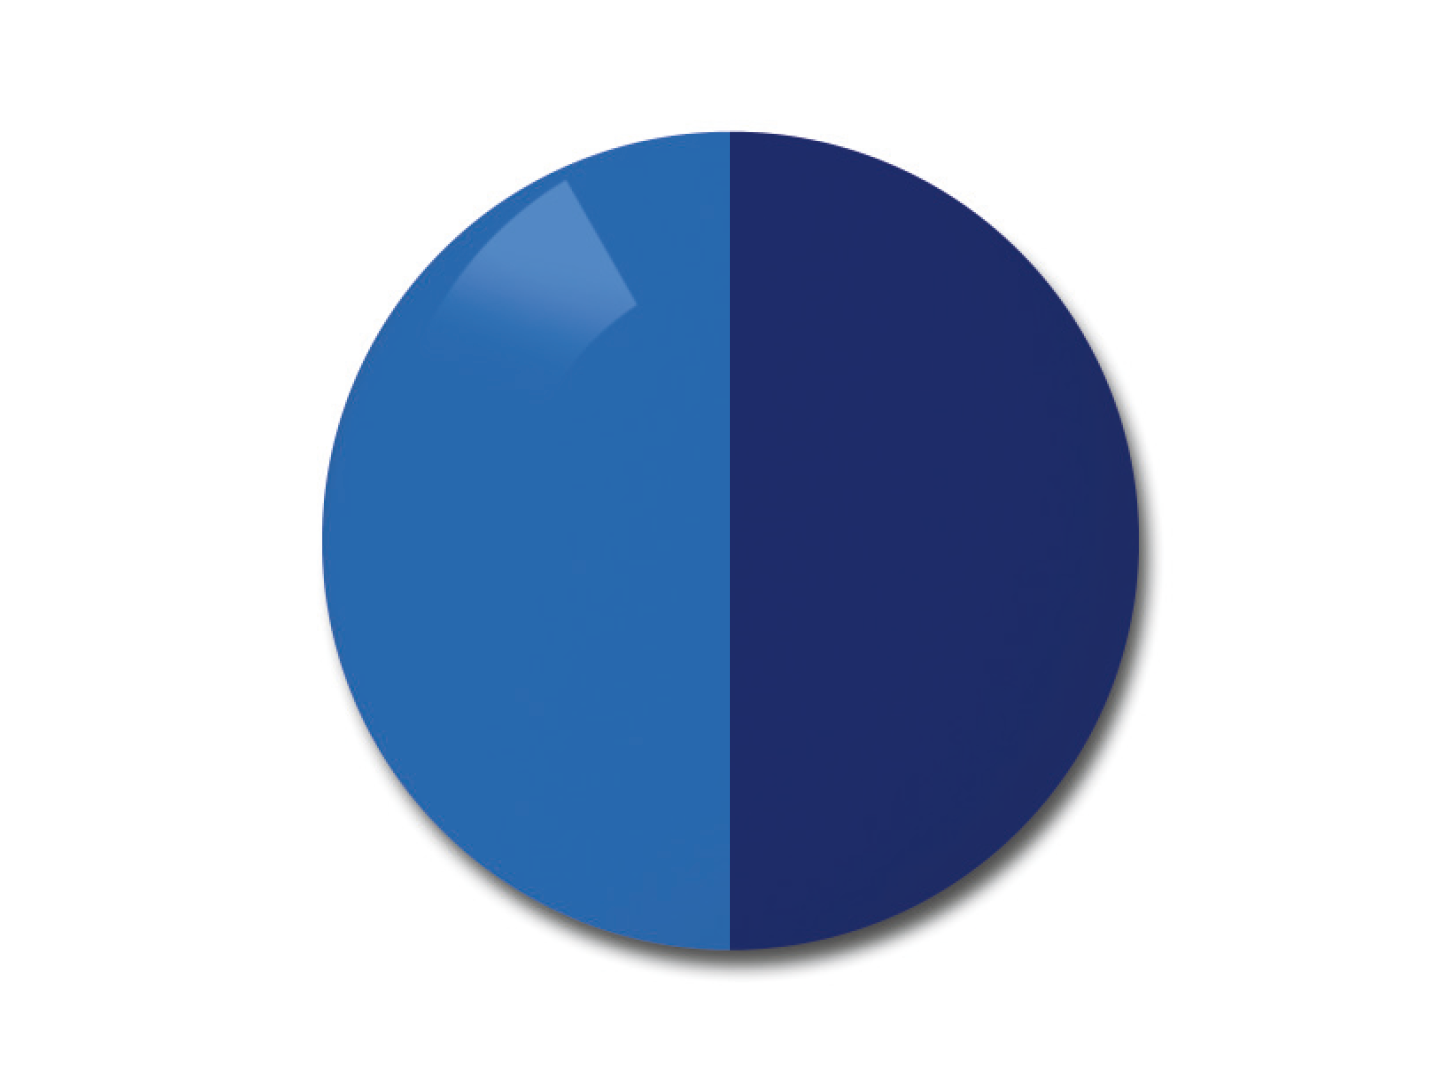 자이스 어댑티브선 변색 렌즈 중 단색 블루 색상을 보여주는 이미지 